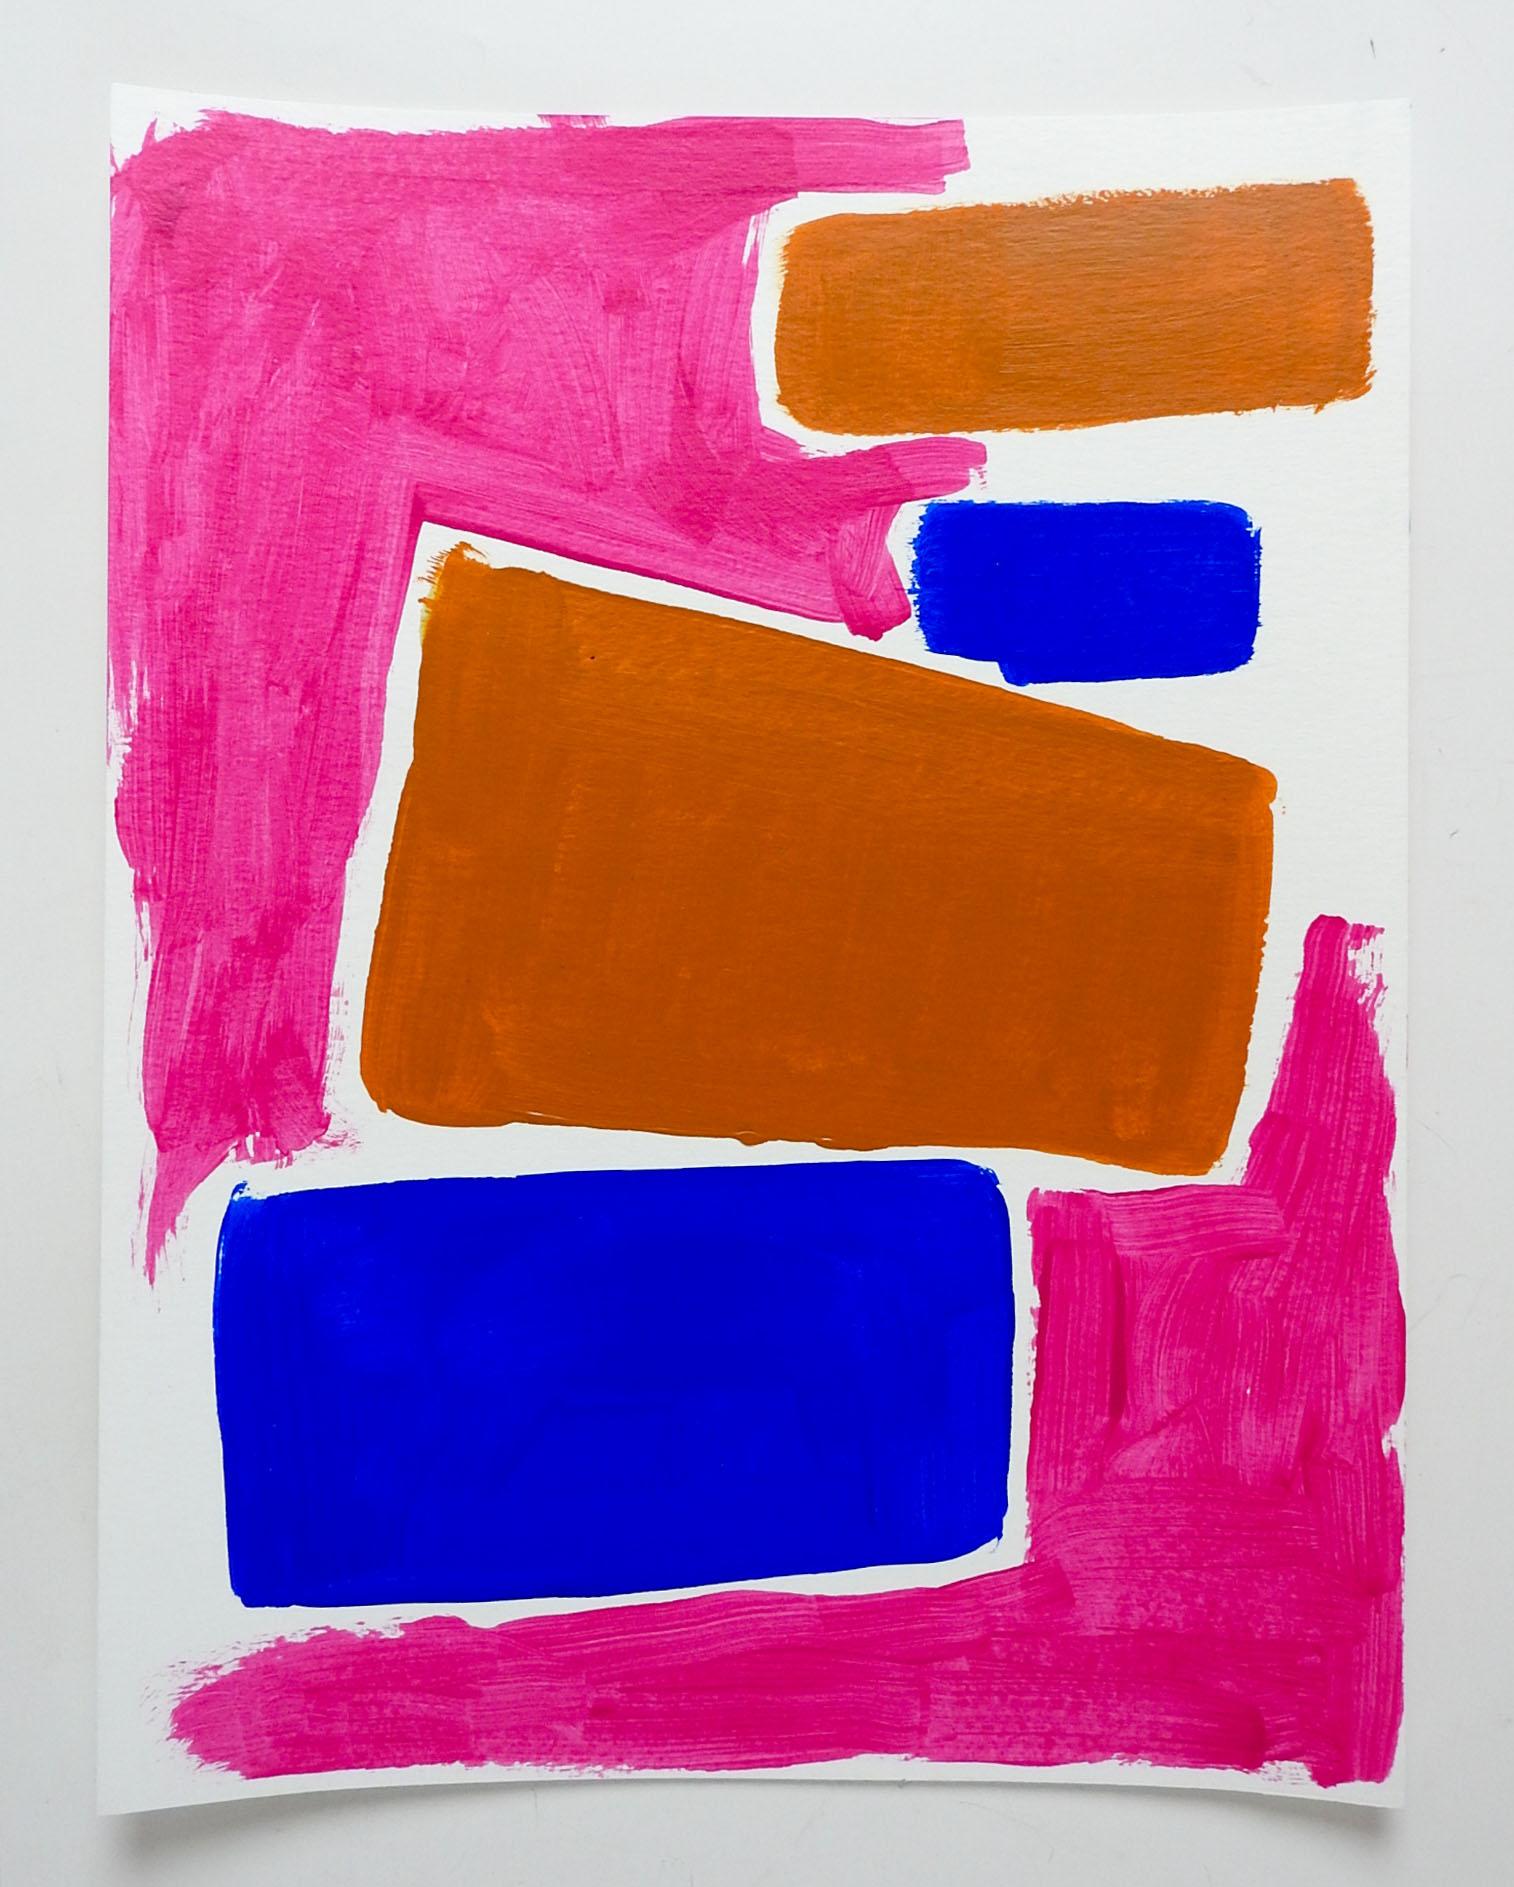 Contemporain 2020 rose, bleu et terracotta peinture abstraite à la gouache sur papier de David Grinnell (21e siècle) Texas. Signé, daté et titré bloc de couleur Sketch #12 au verso. Non encadré, bon état.